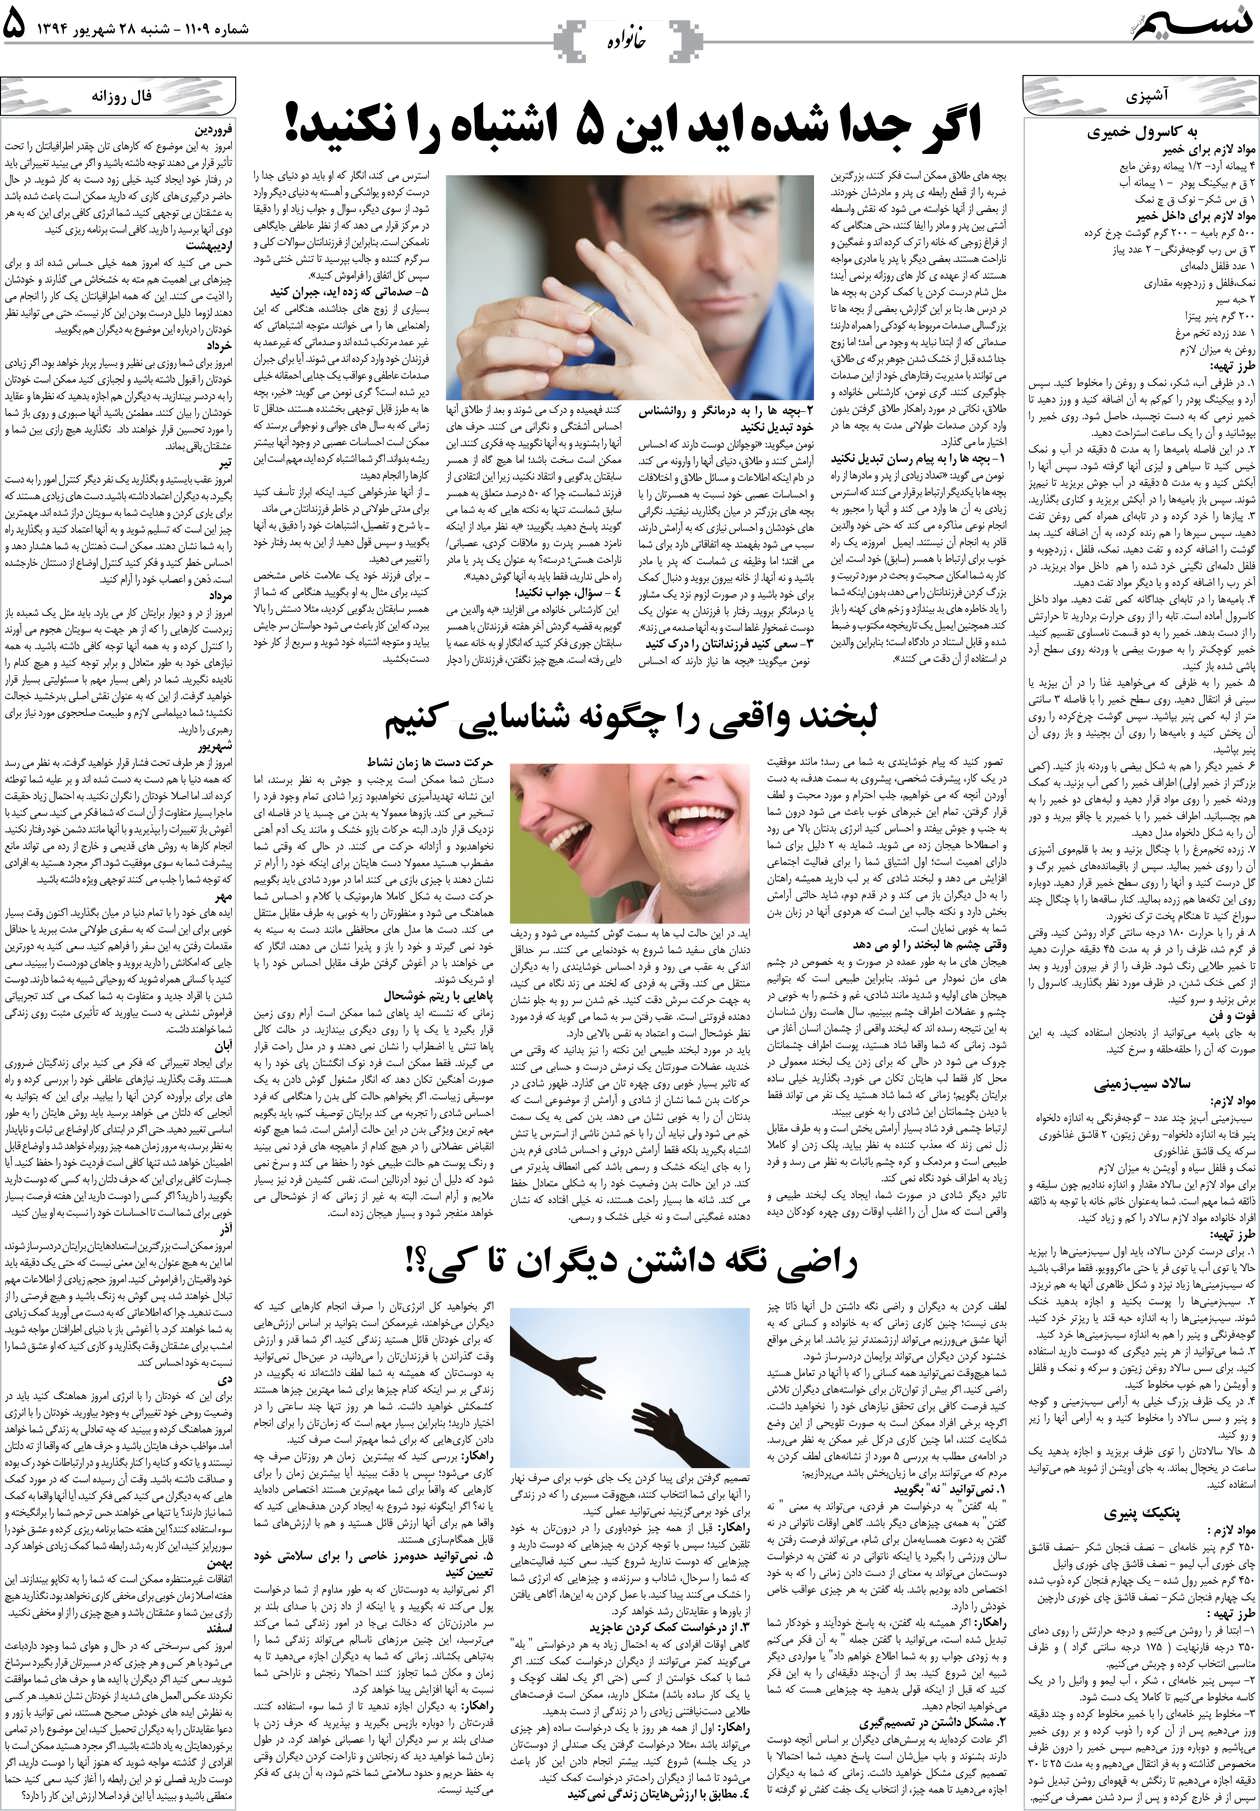 صفحه خانواده روزنامه نسیم شماره 1109